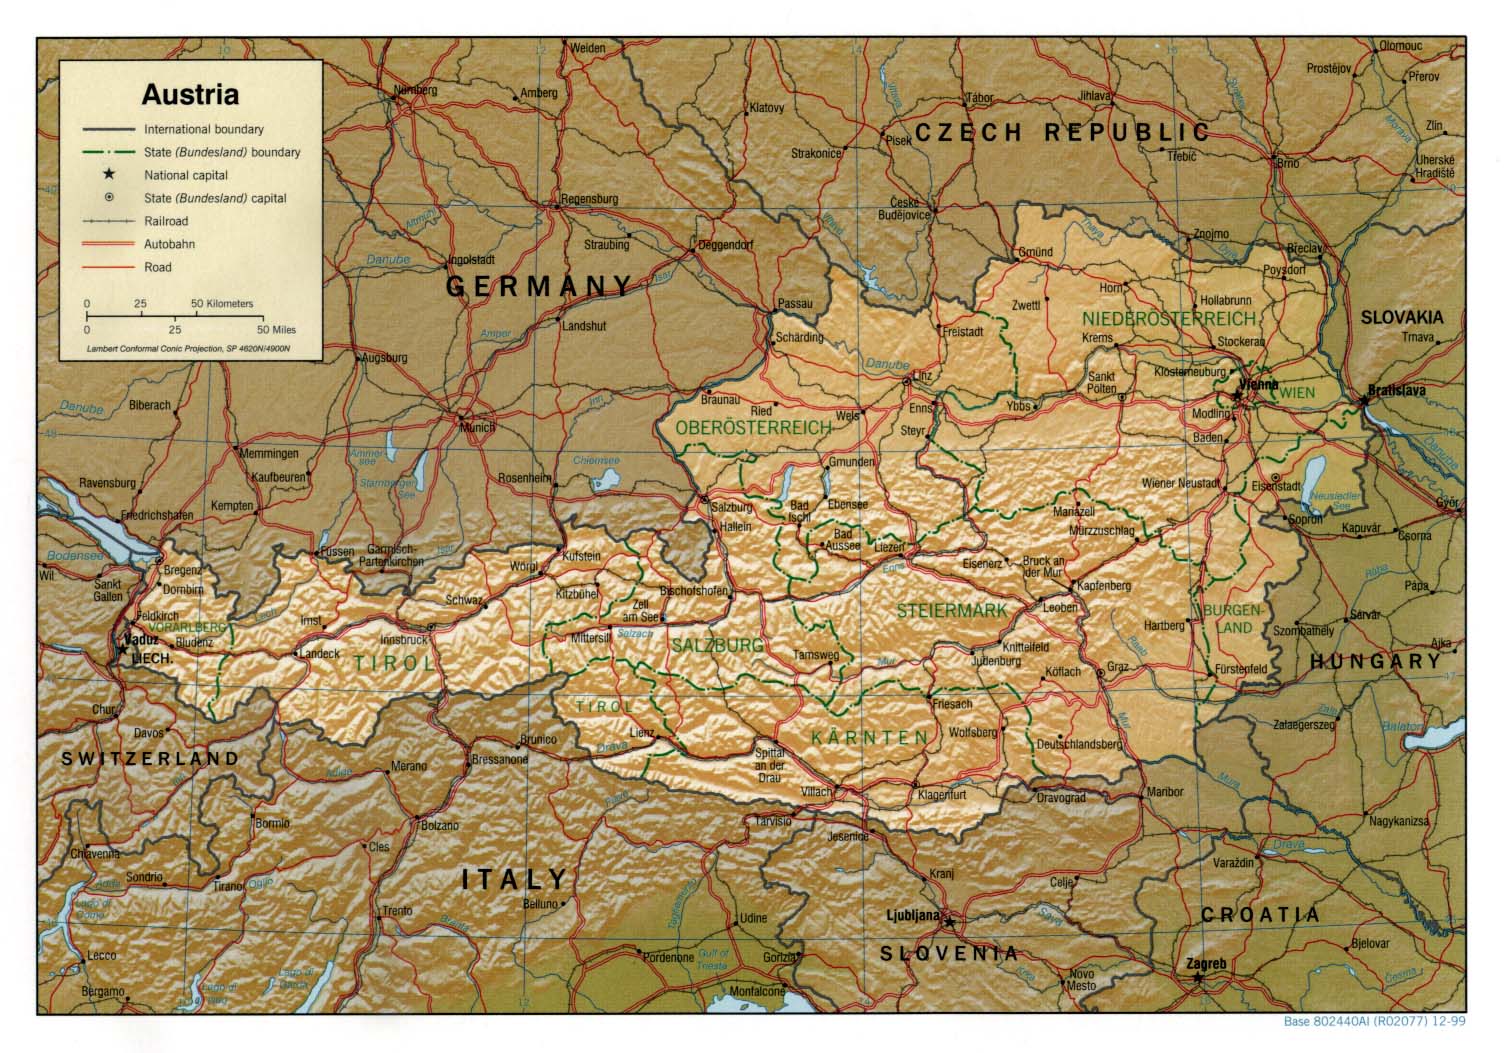 austria térkép Ausztria térkép lap   Megbízható válaszok profiktól austria térkép